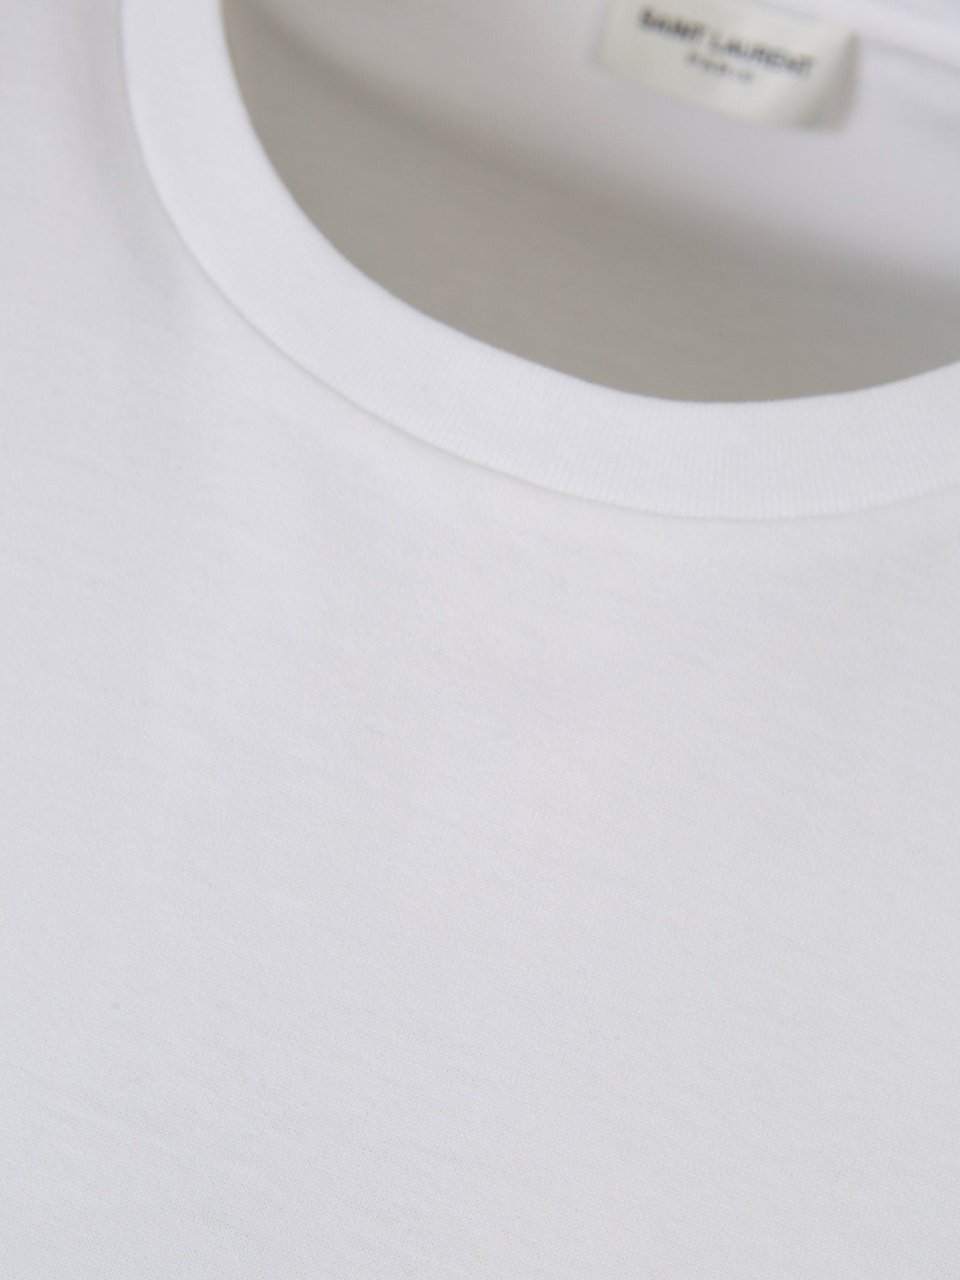 Saint Laurent Logo Cotton T-Shirt Wit